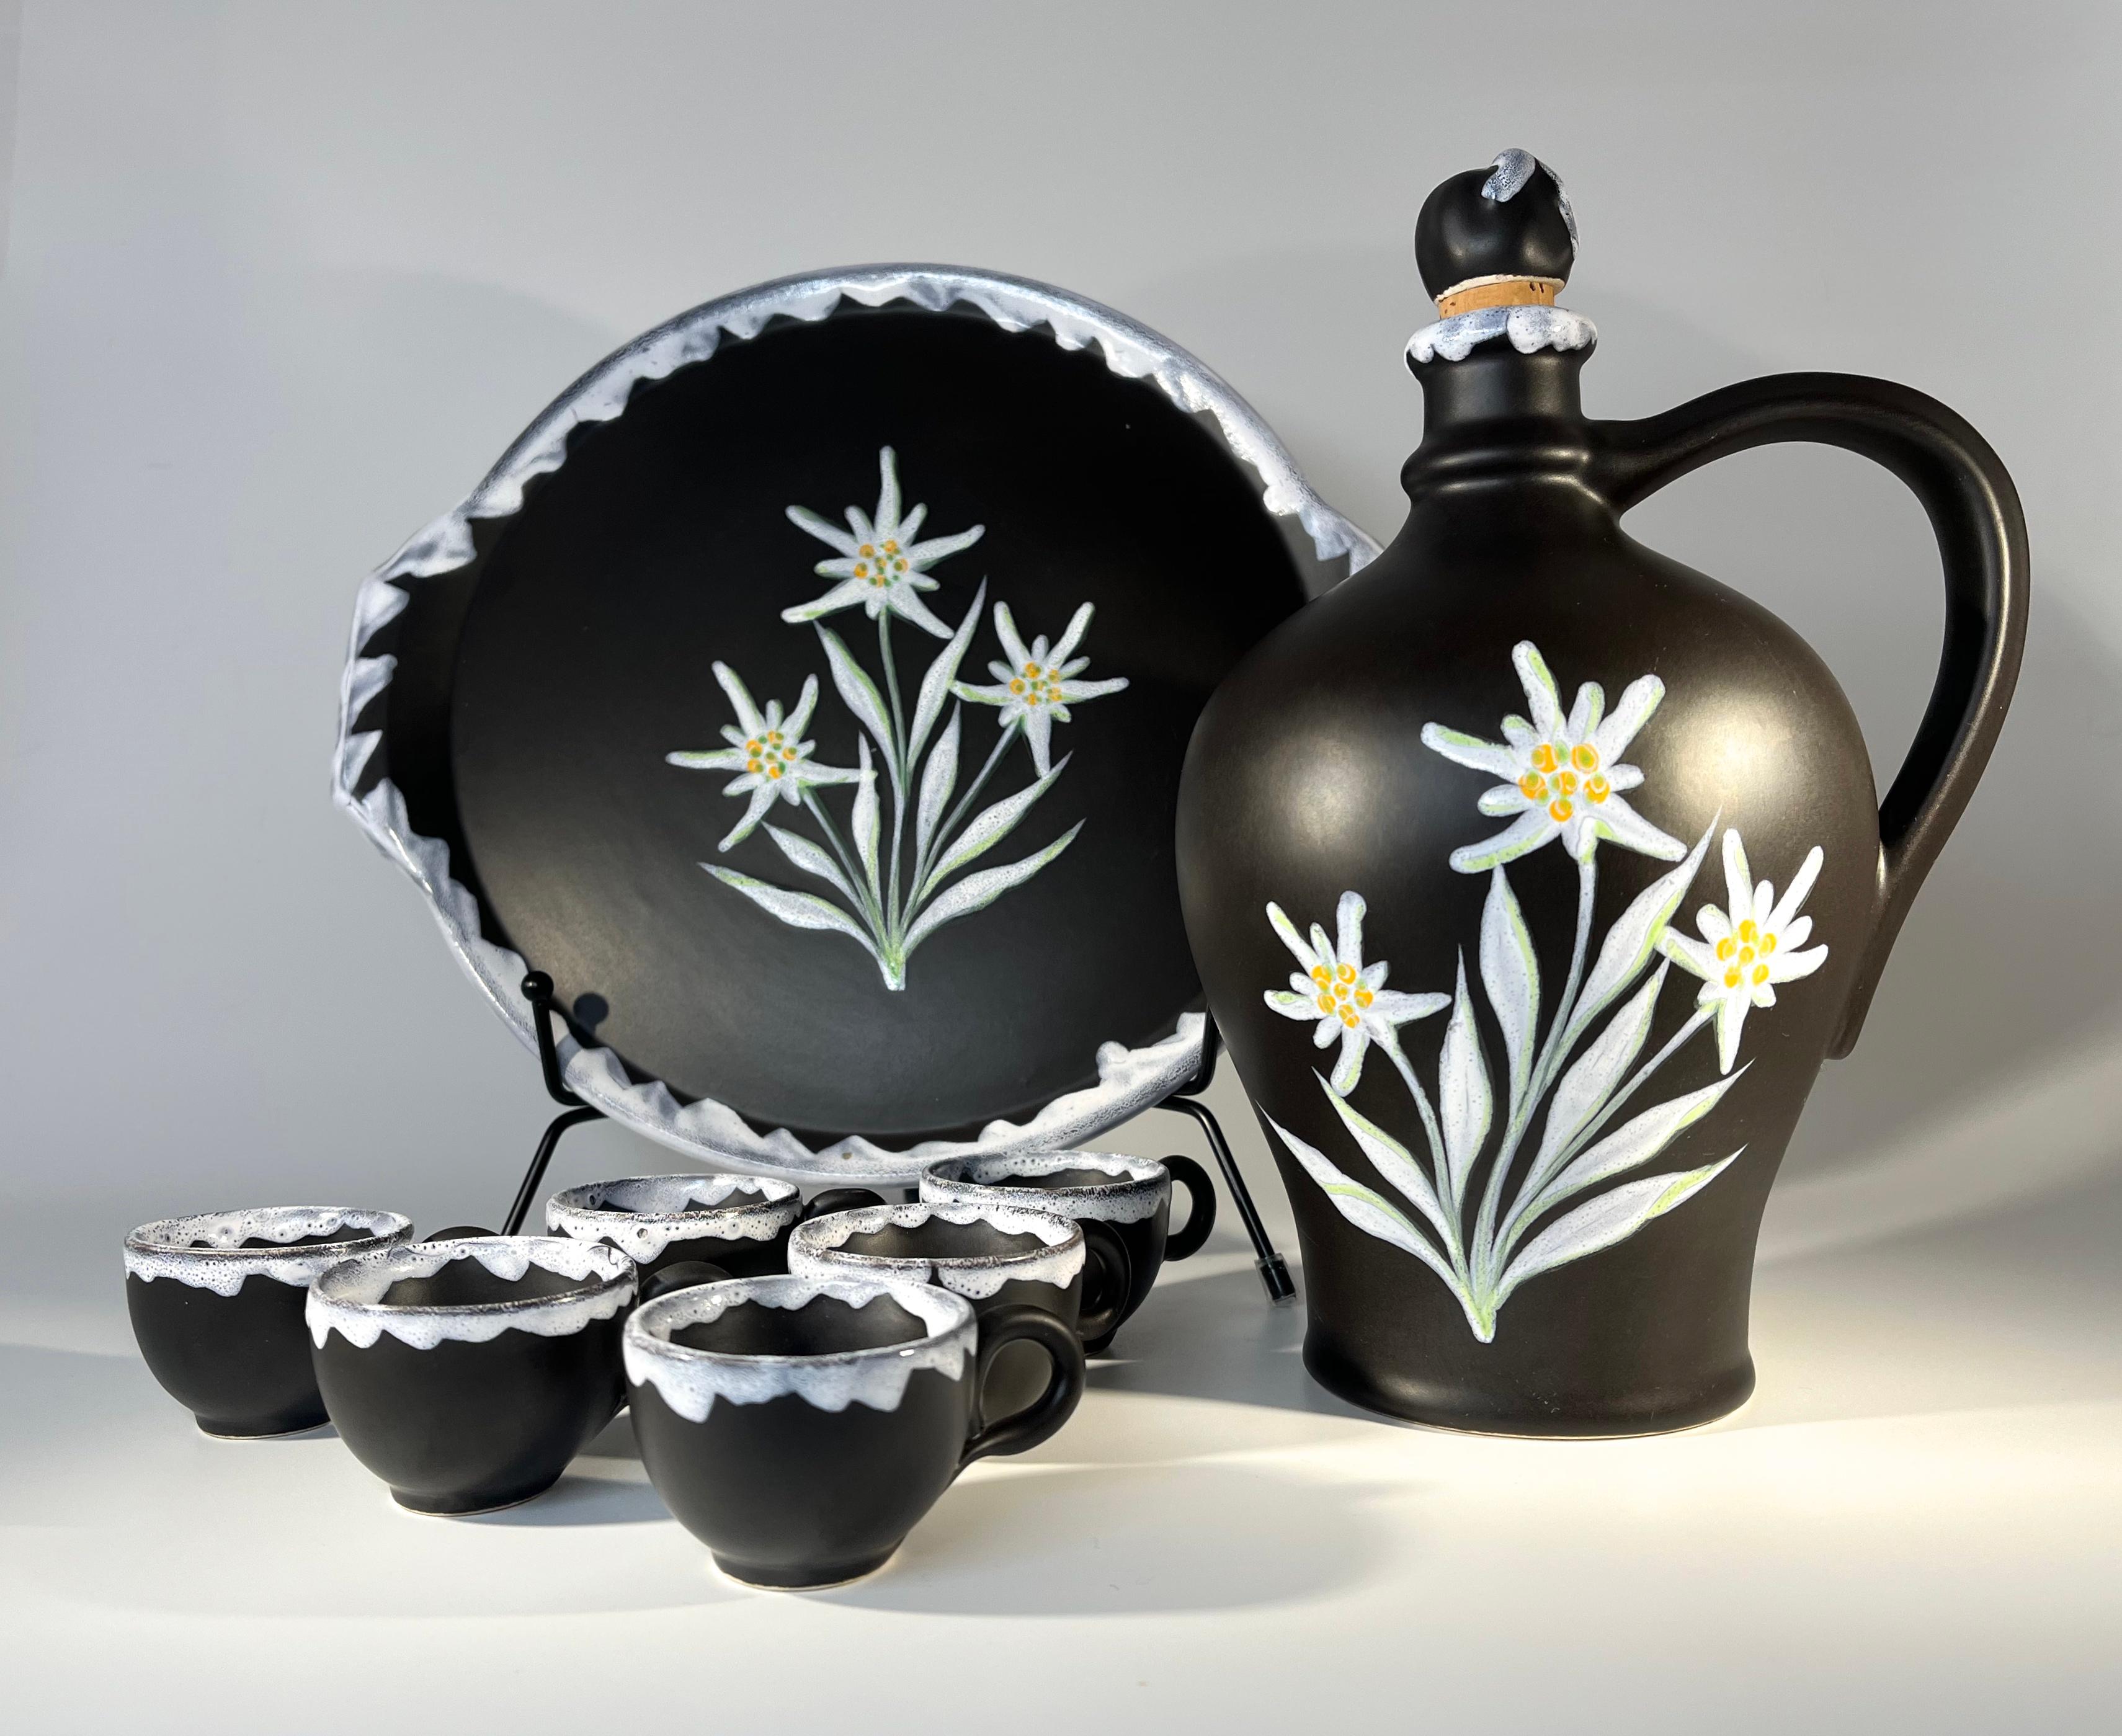 Le célèbre céramiste Gabriel Fourmaintraux  carafe à liqueur, tasses et plateau en céramique noir et blanc
D'élégantes fleurs d'Edelweiss peintes à la main ornent la carafe et le plateau. 
Six petites tasses d'accompagnement, noires avec des bords